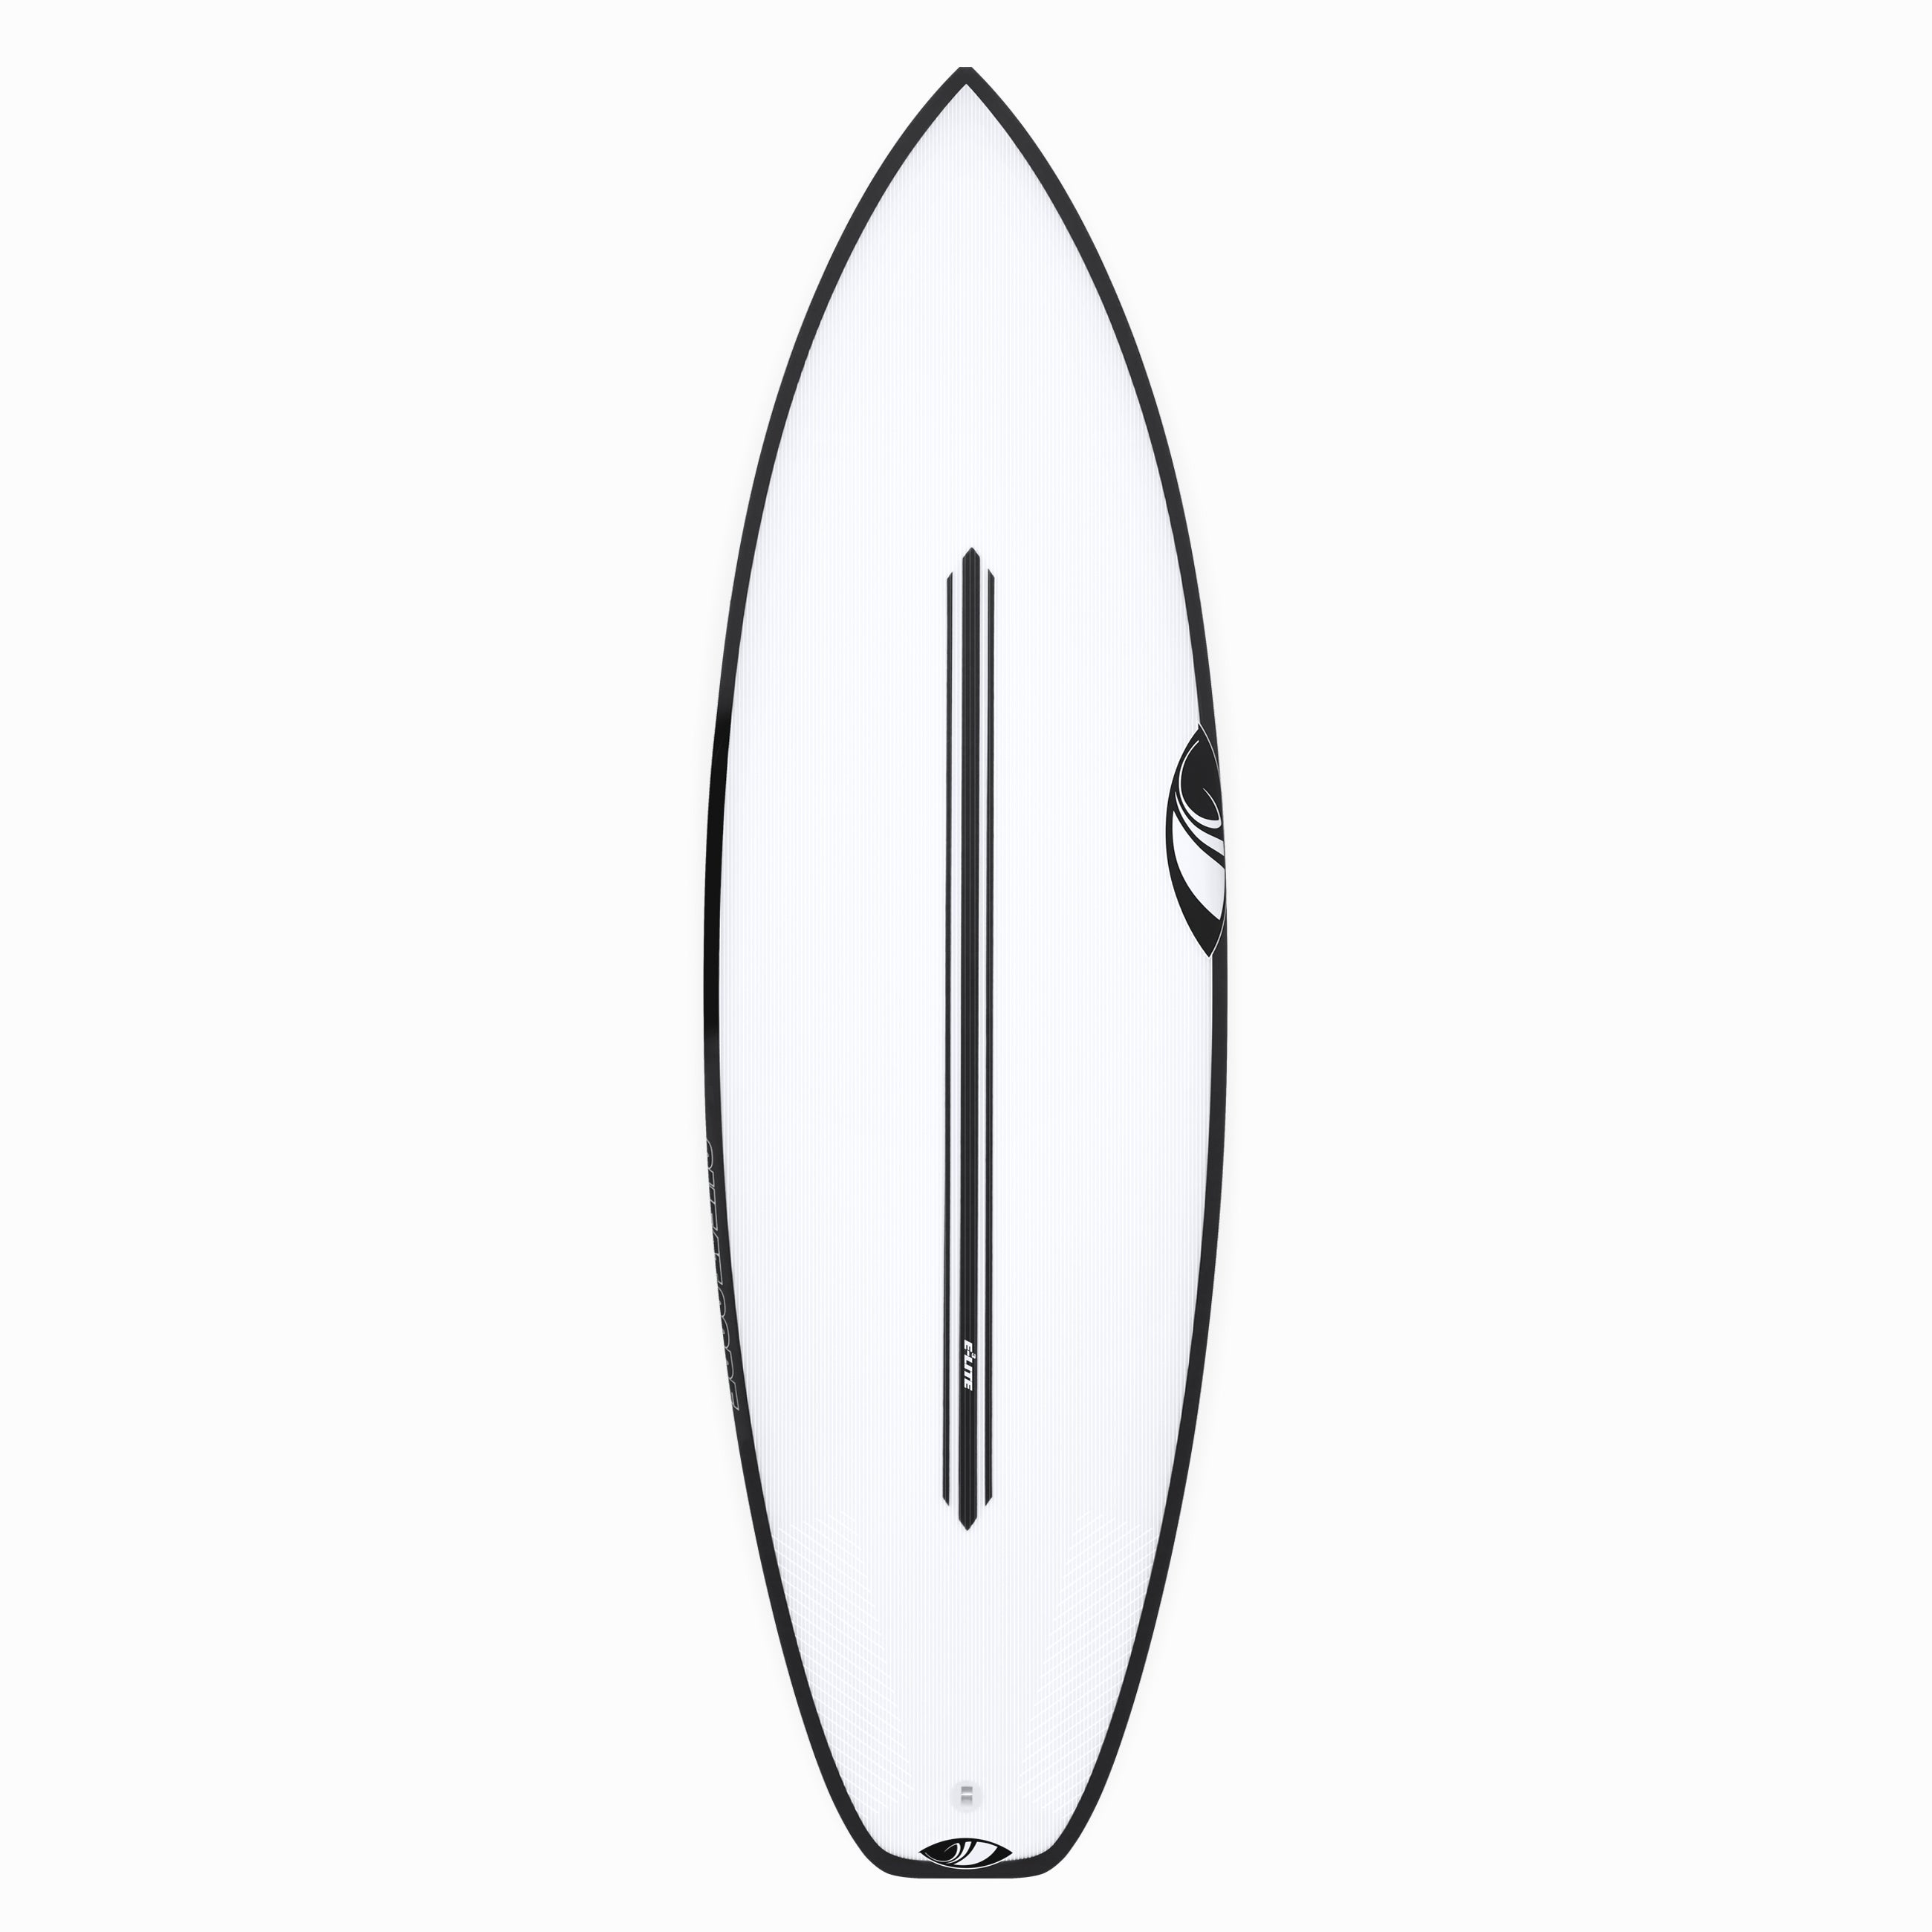 Alternate Range – Sharp Eye Surfboards